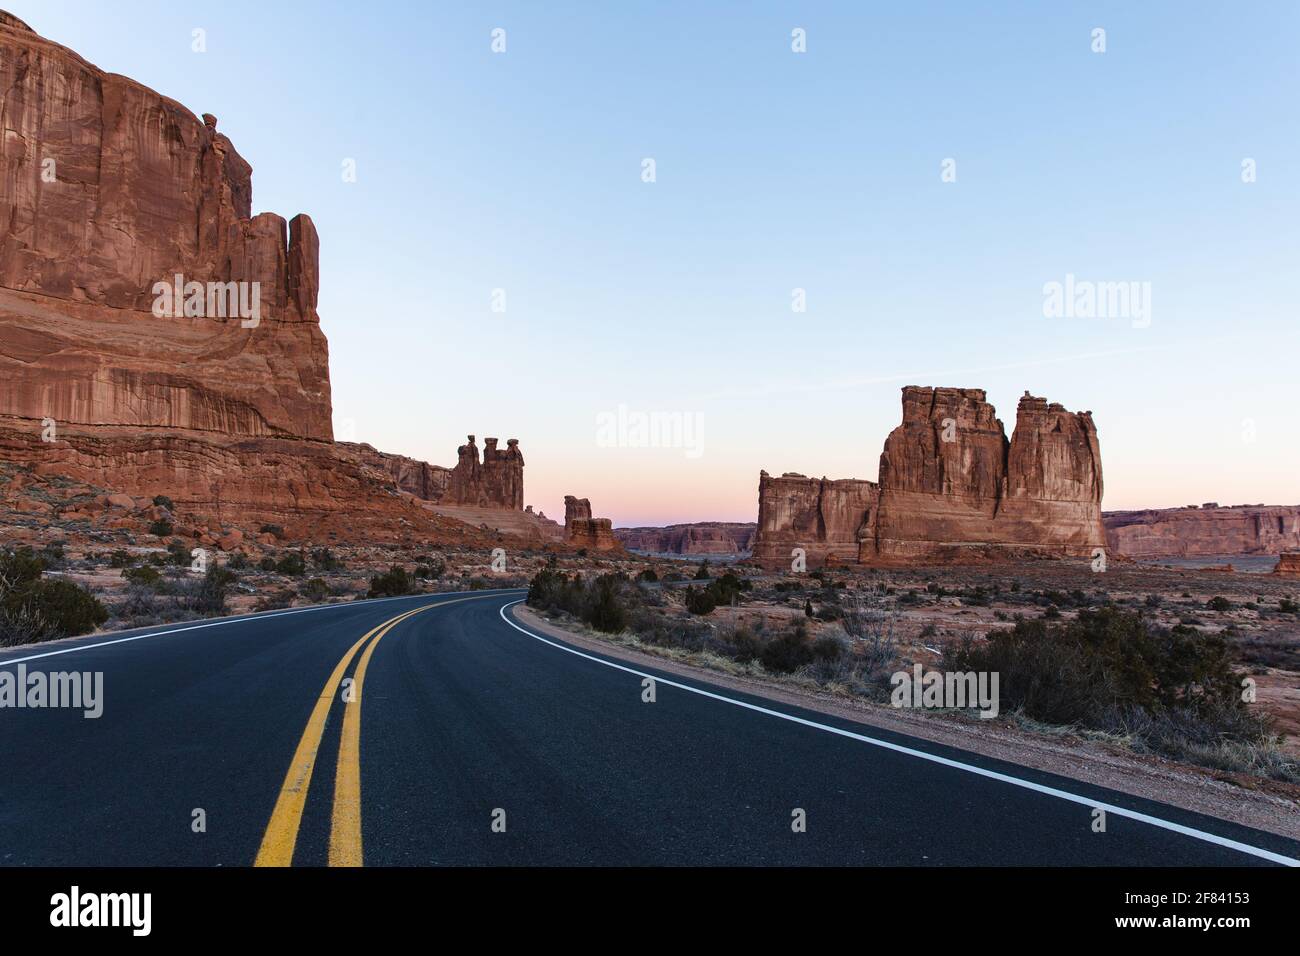 Strada asfaltata con due linee gialle al centro di un canyon di roccia rossa in estate su un'alba Foto Stock